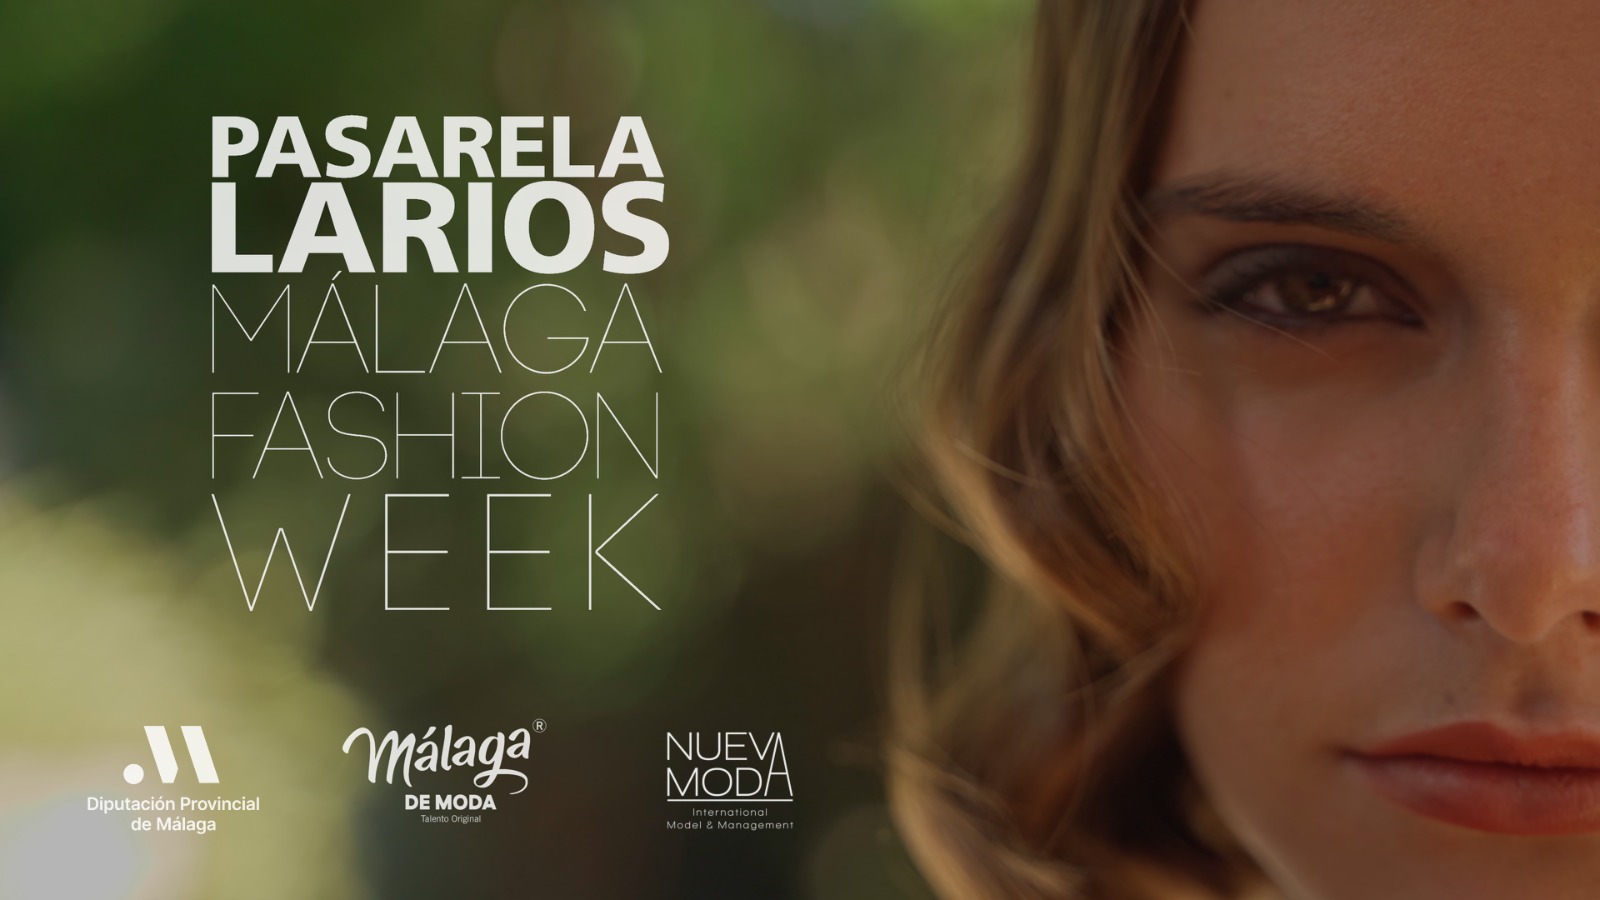 Málaga de Moda | Pasarela Larios Málaga Fashion Week